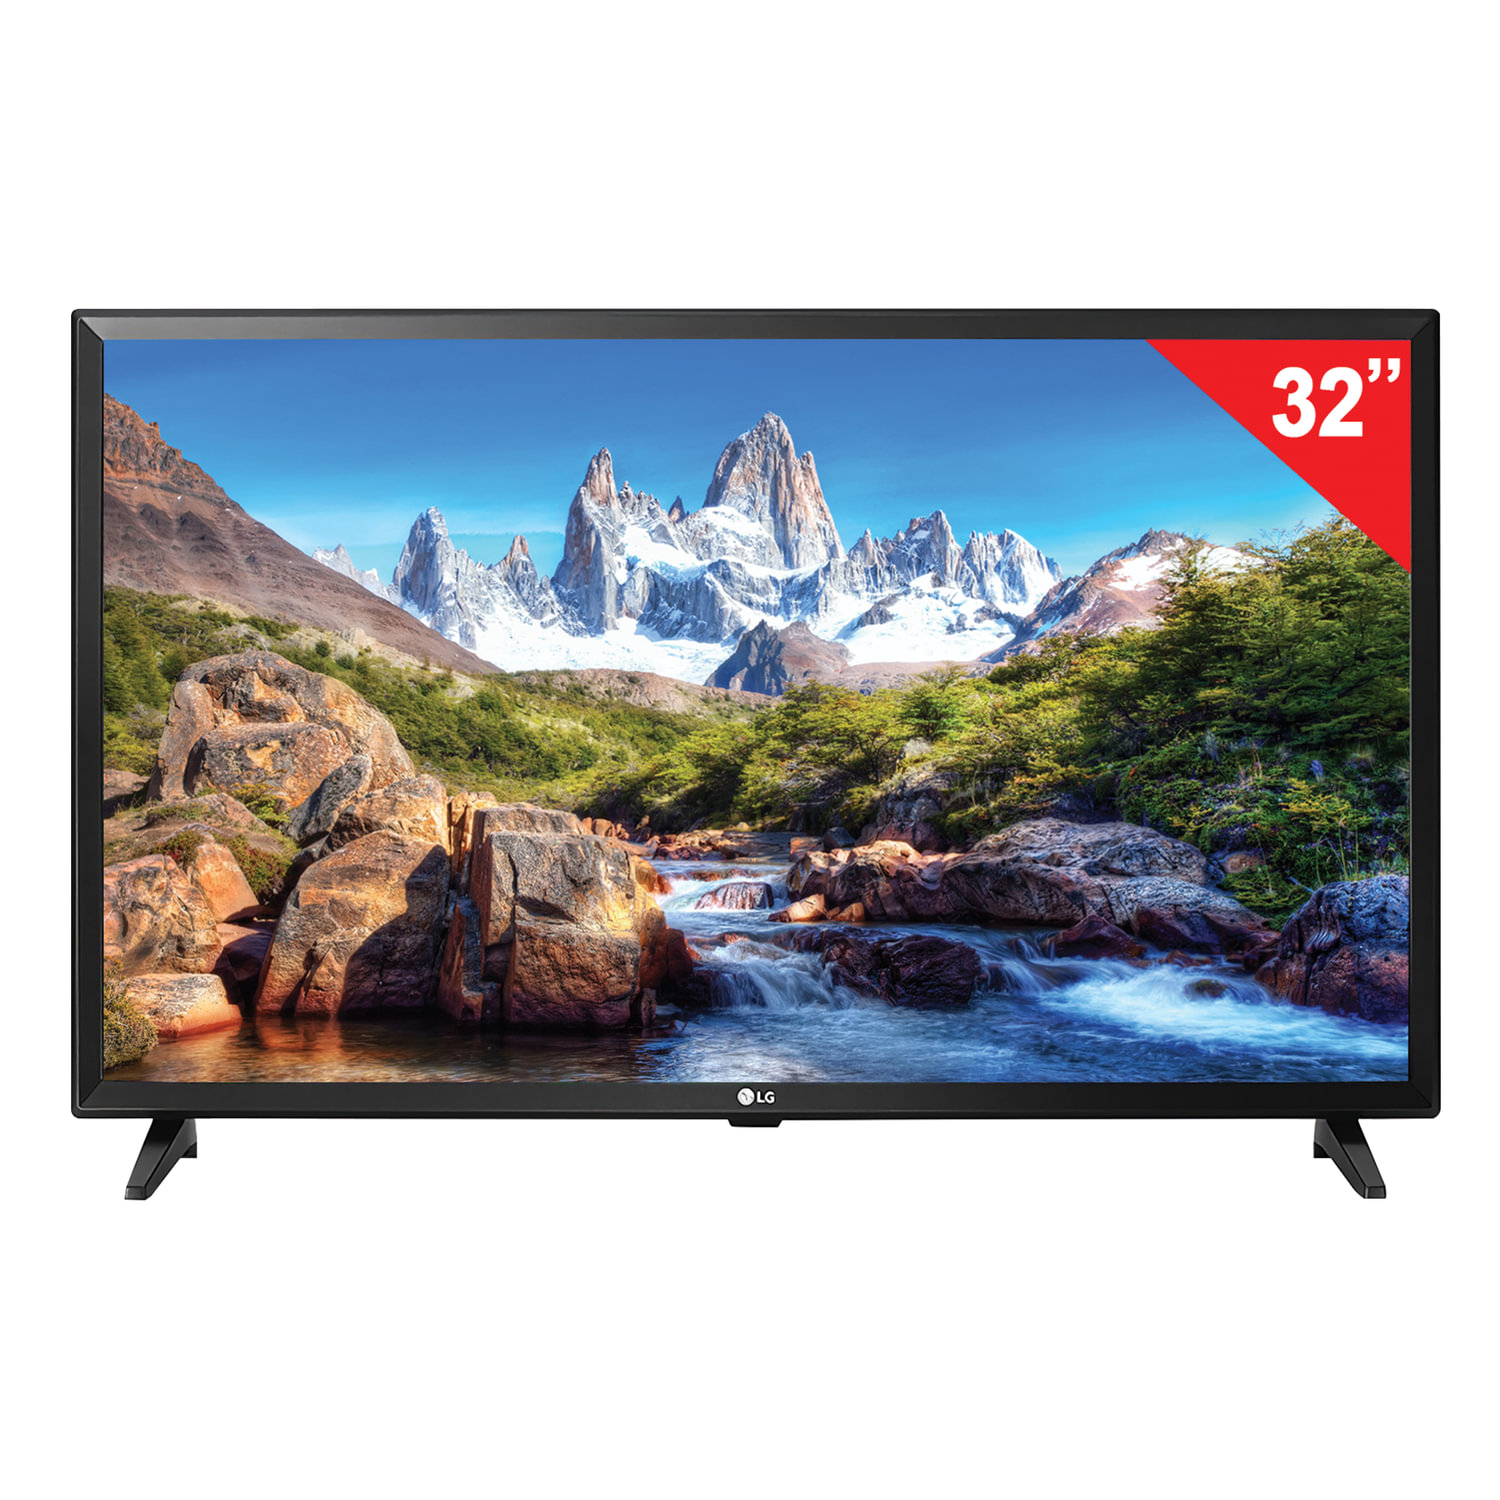 Цена телевизора екатеринбург. Телевизор LG 32lj510u. LG телевизоры 43 дюйма смарт. LG 32lj510u 2017 led. Телевизор LG Smart TV 32 дюйма.